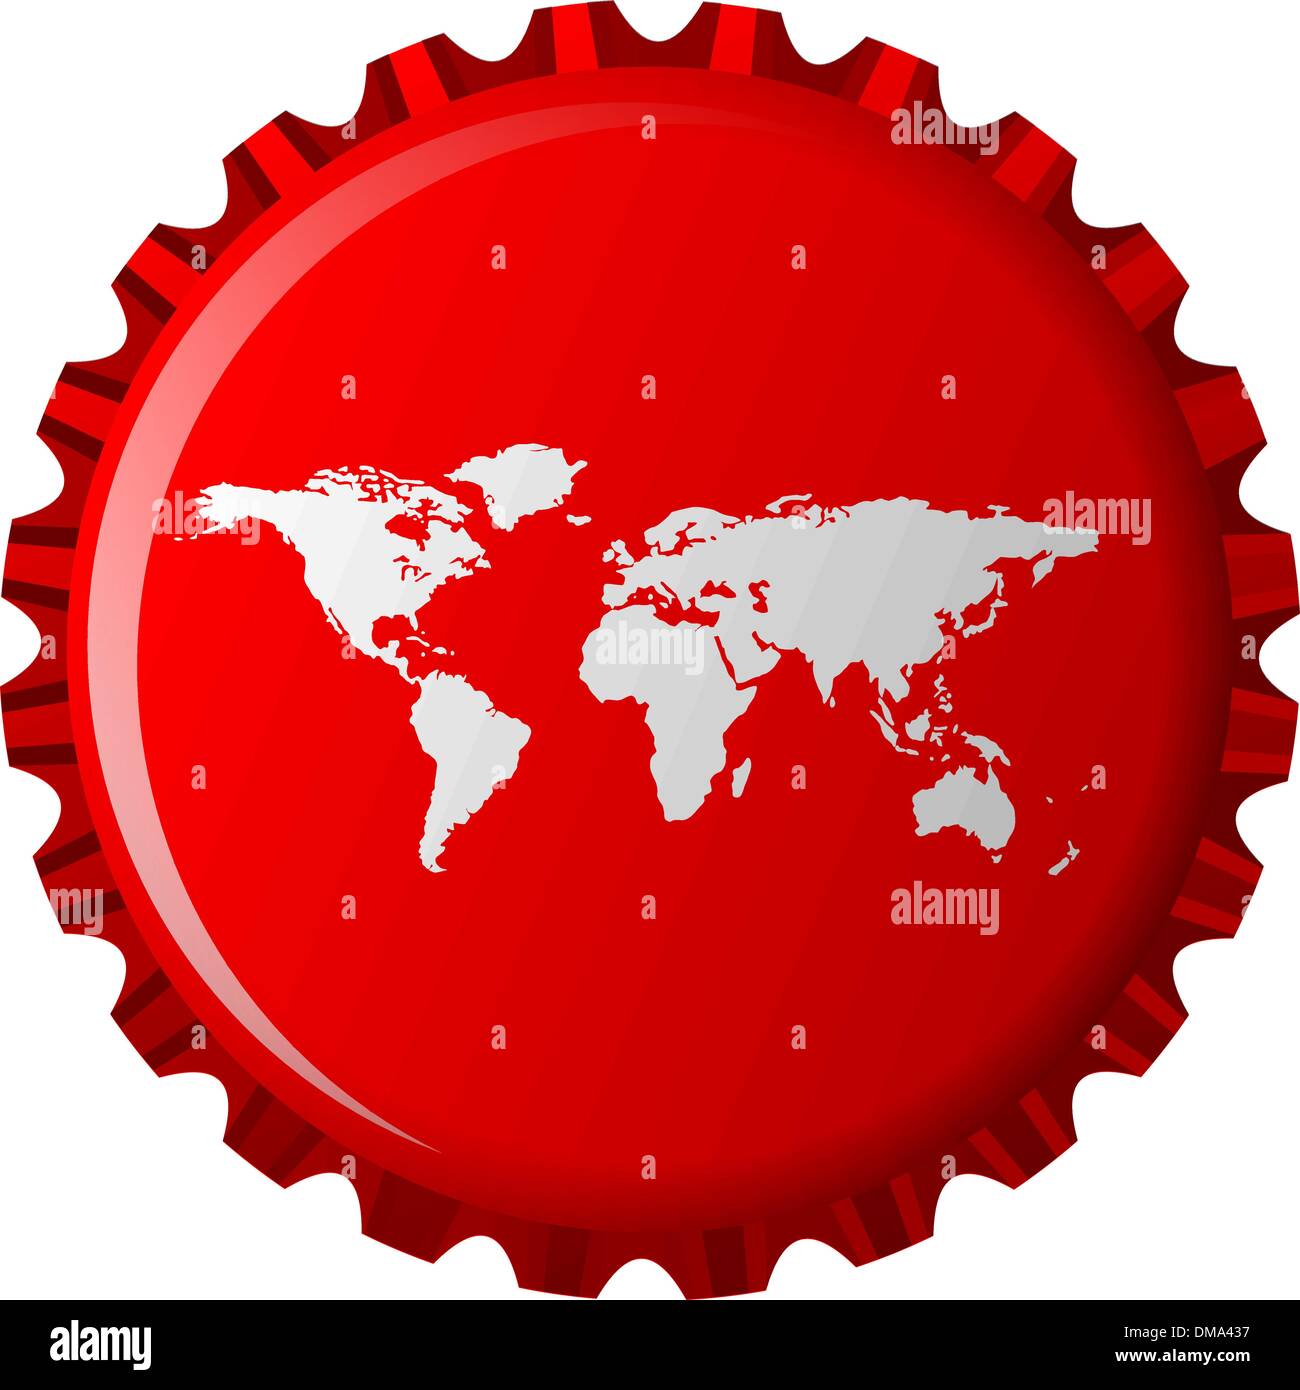 white world map on red bottle cap Stock Vector